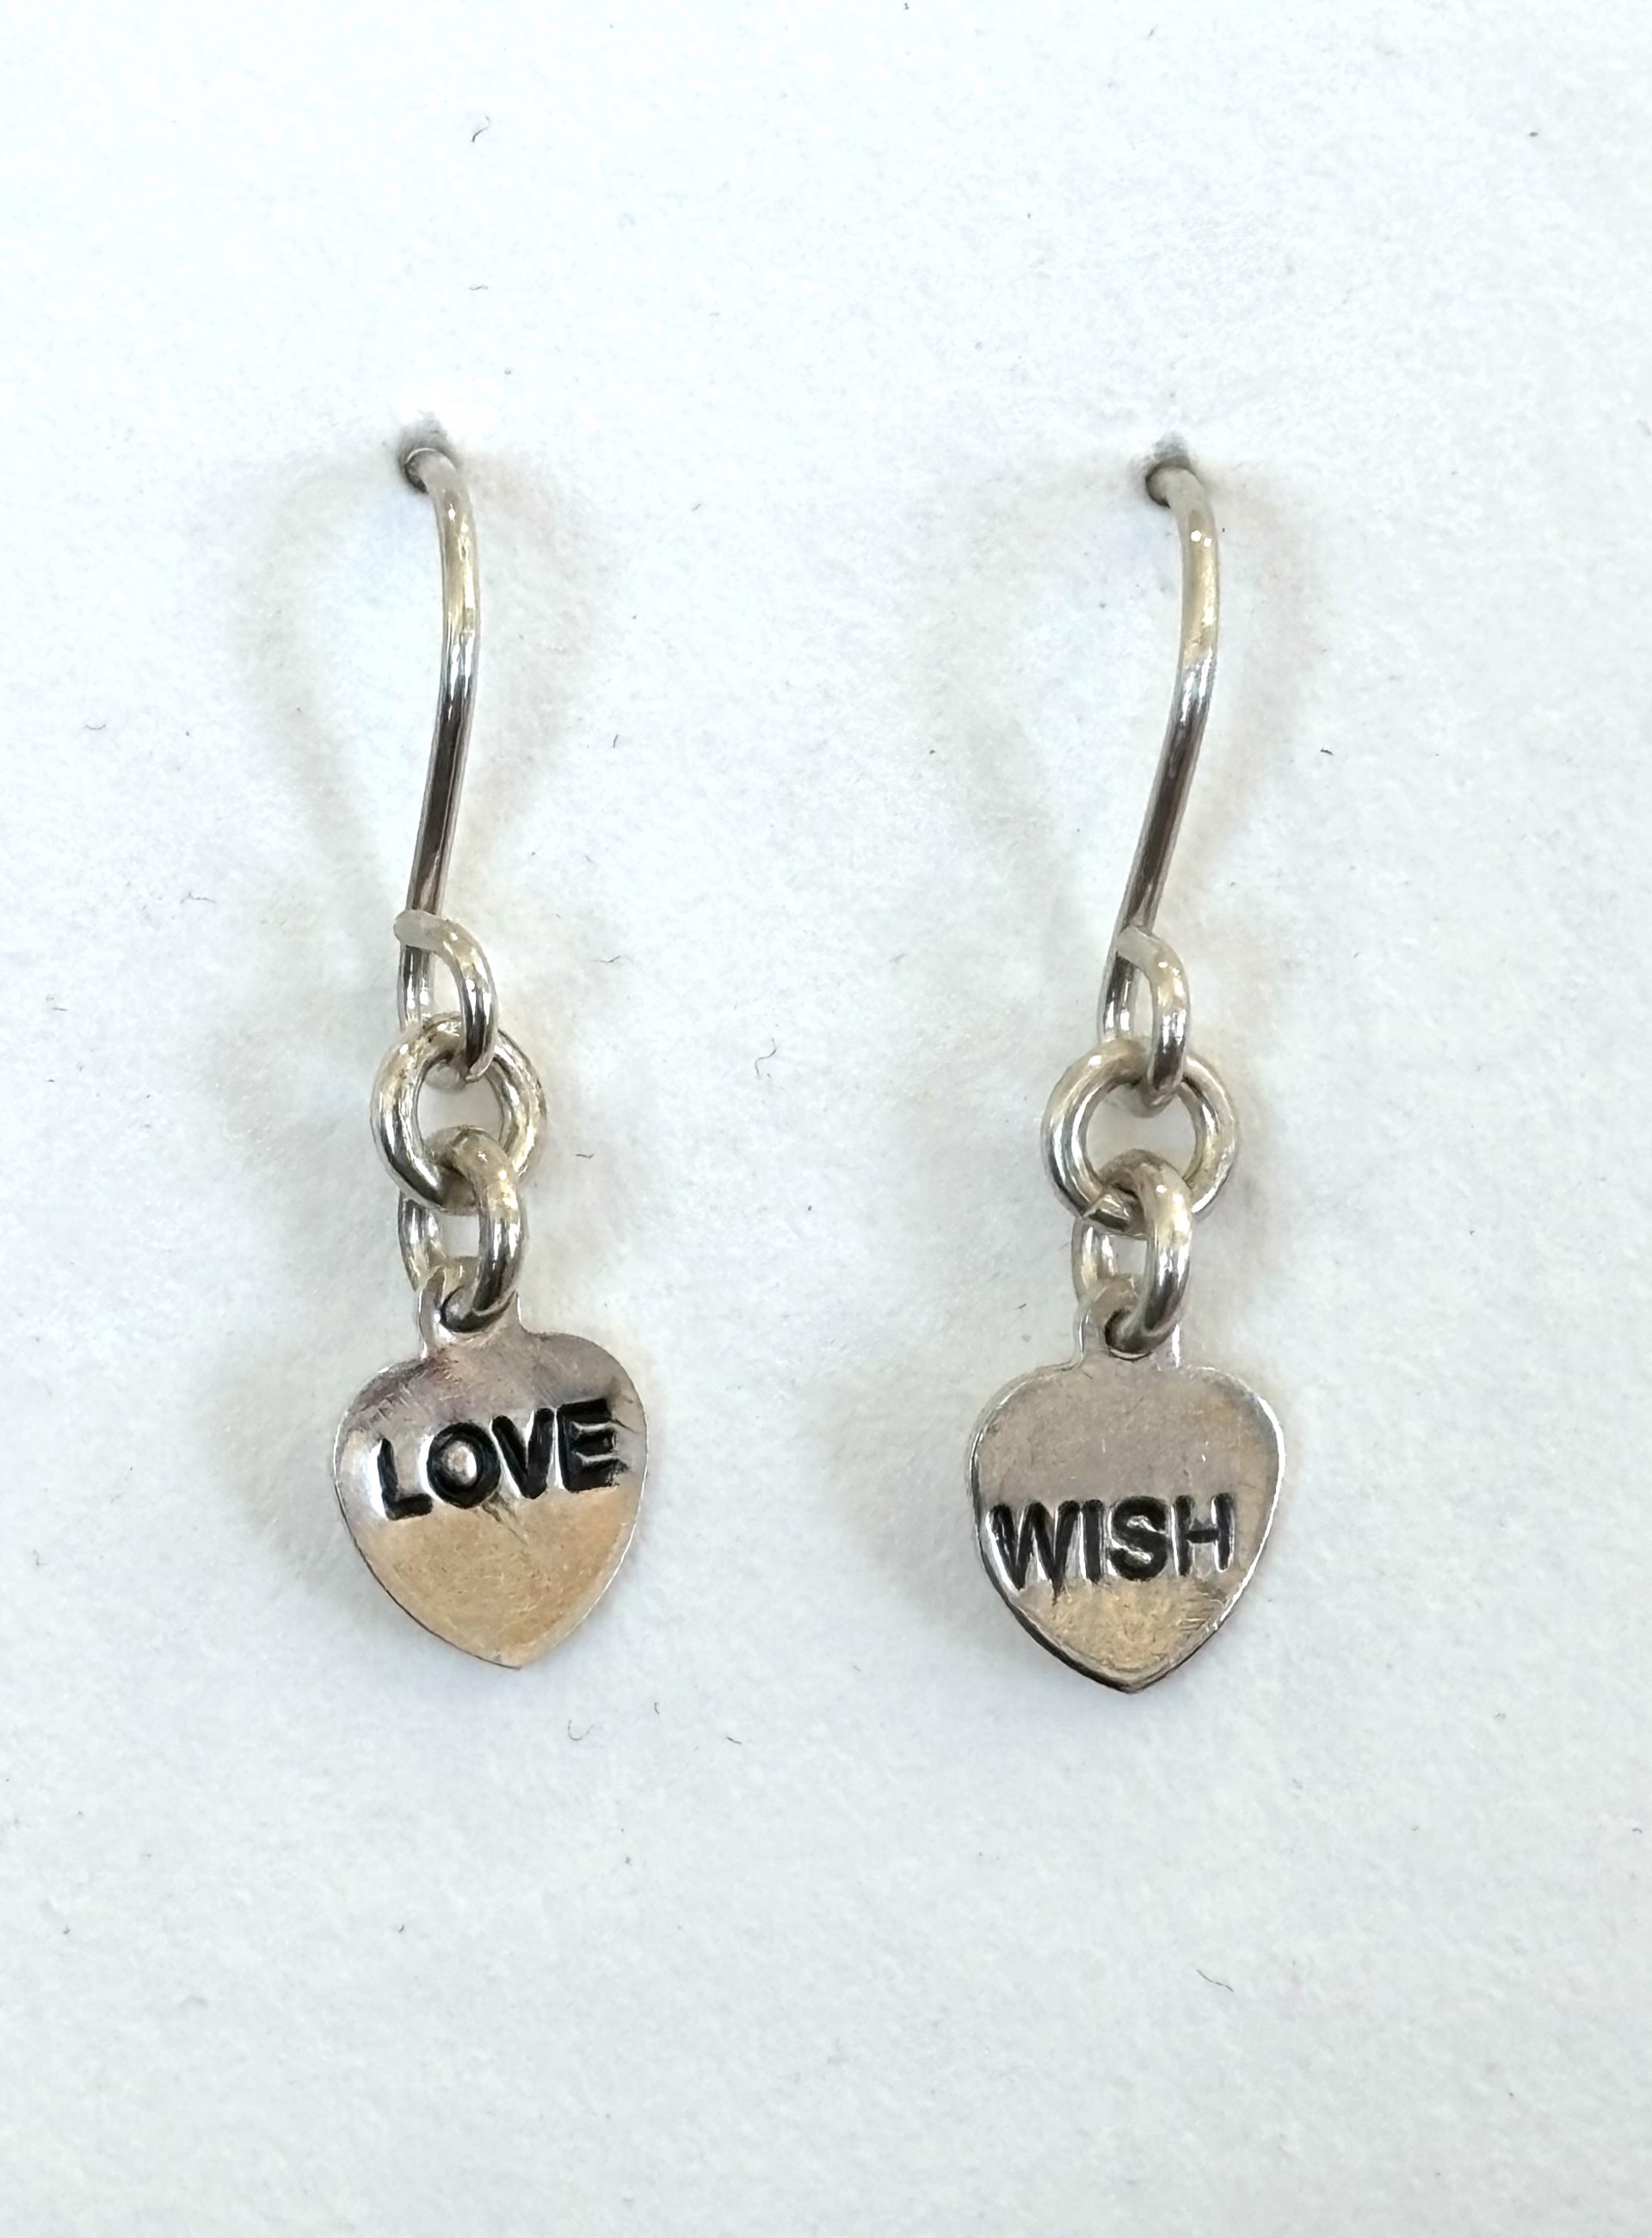 Love Wish Mantra Earrings by Emelie Hebert